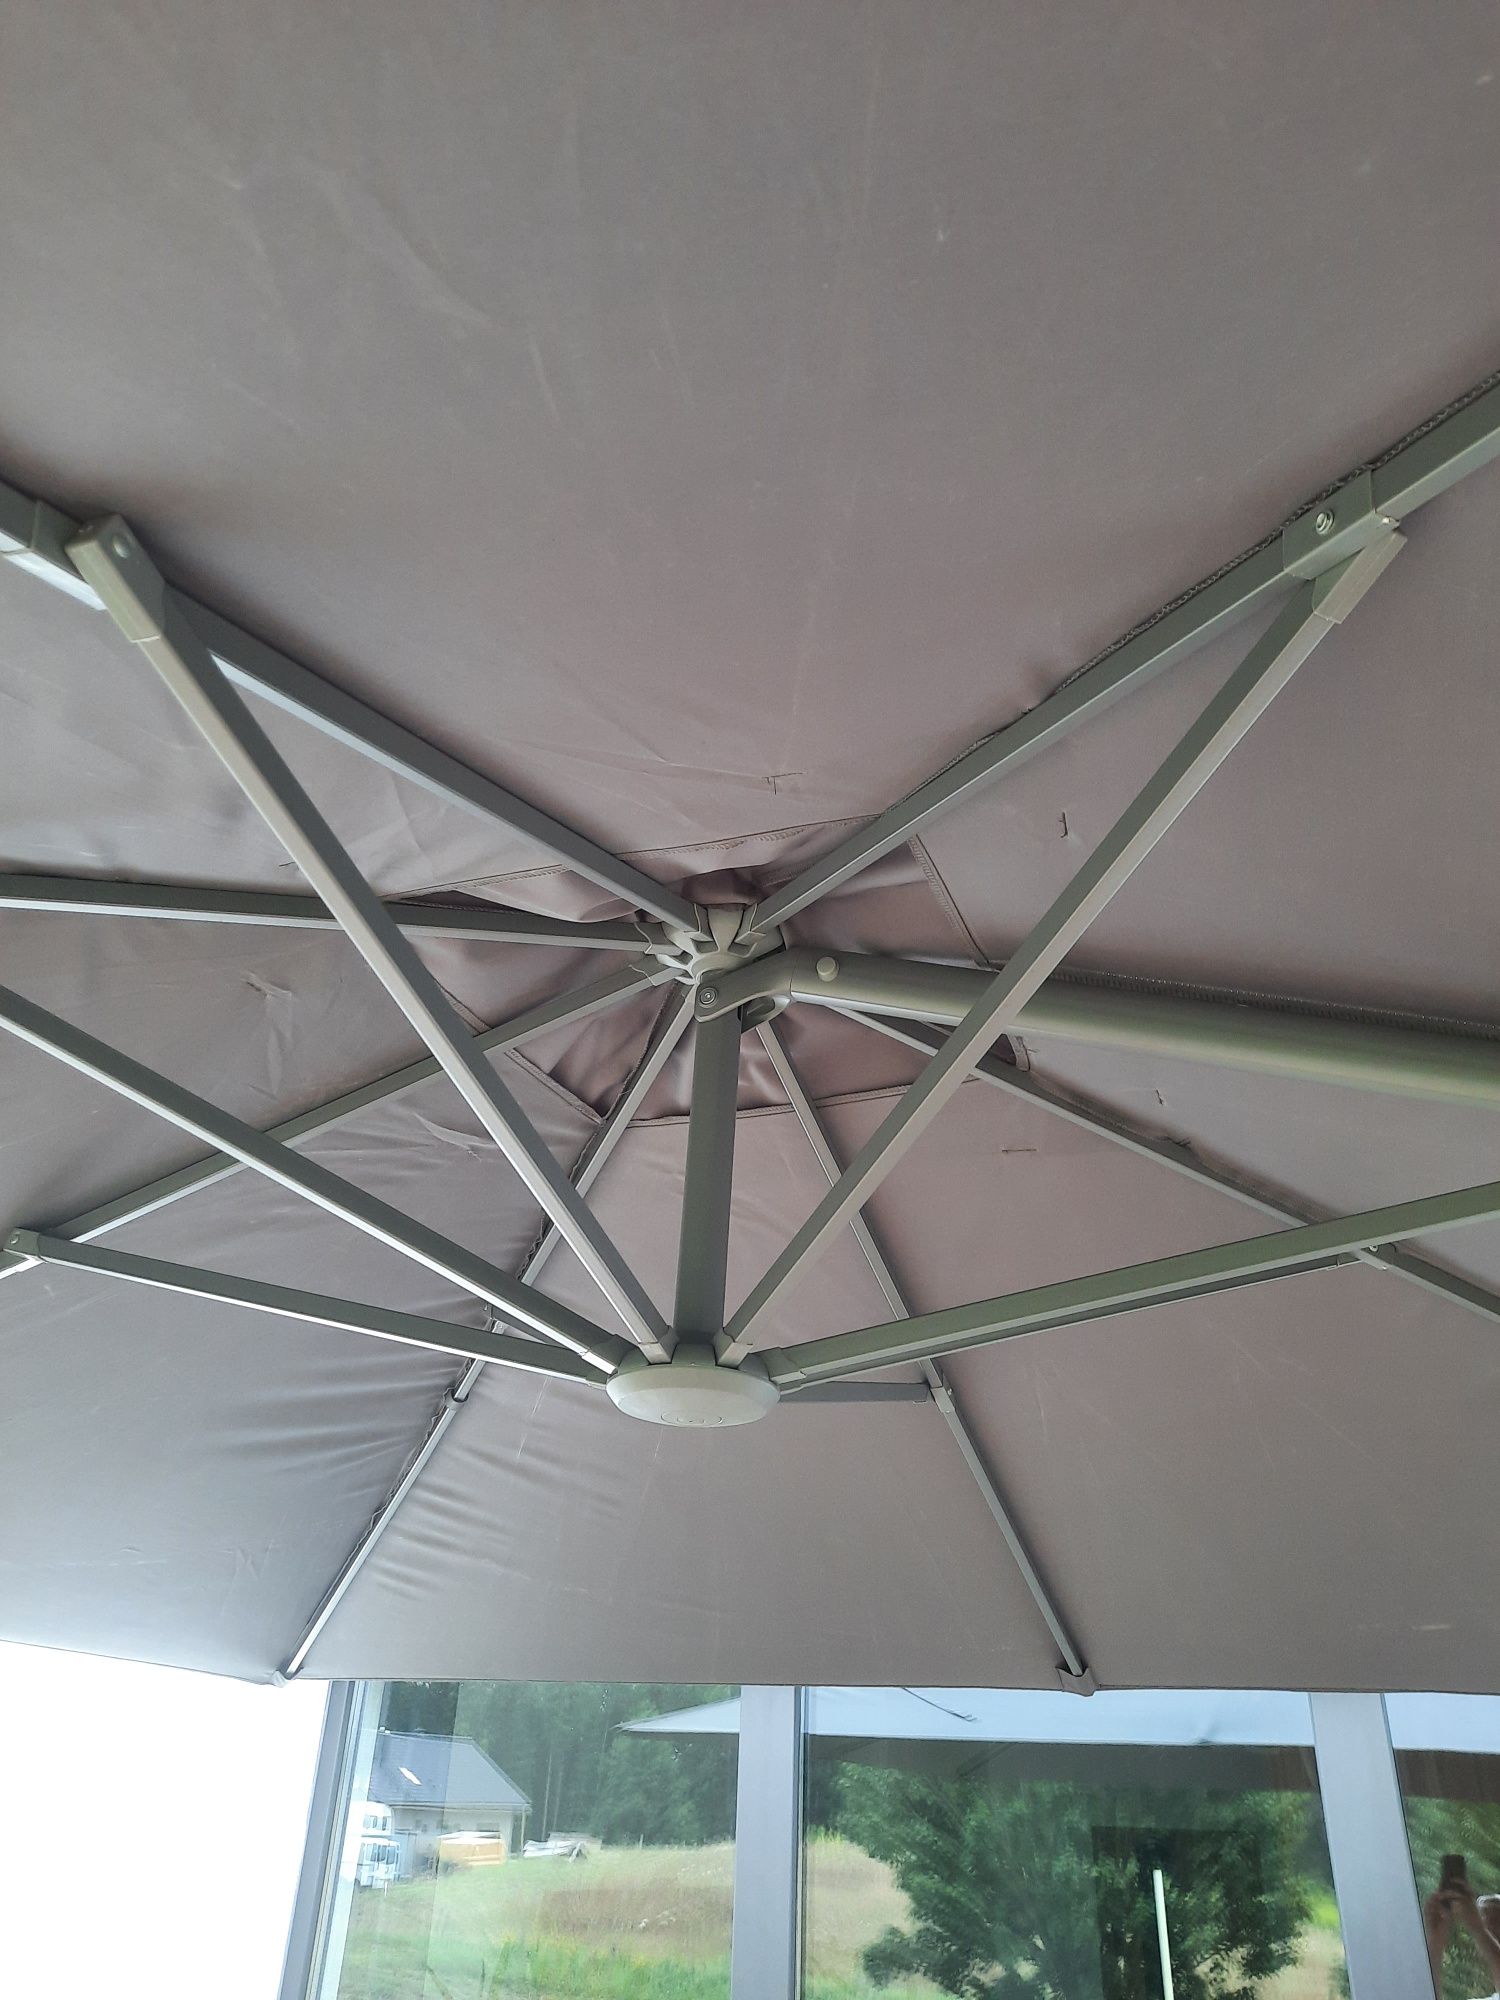 Podwójny parasol ogrodowy